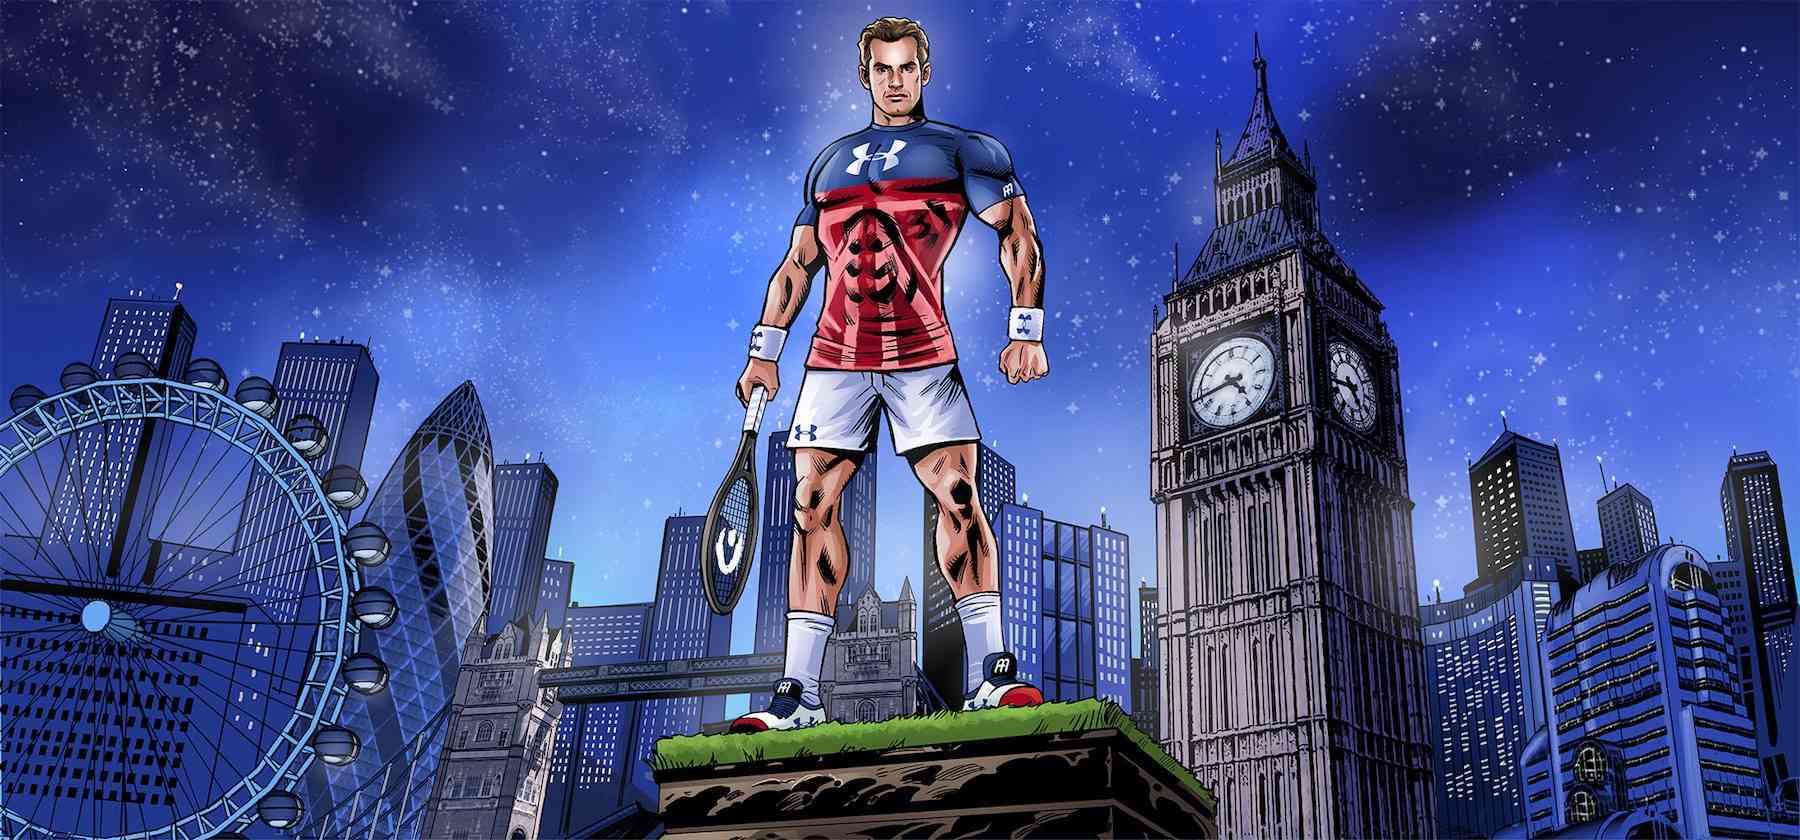 Under Armour transforma a Andy Murray en el superhéroe deportivo británico